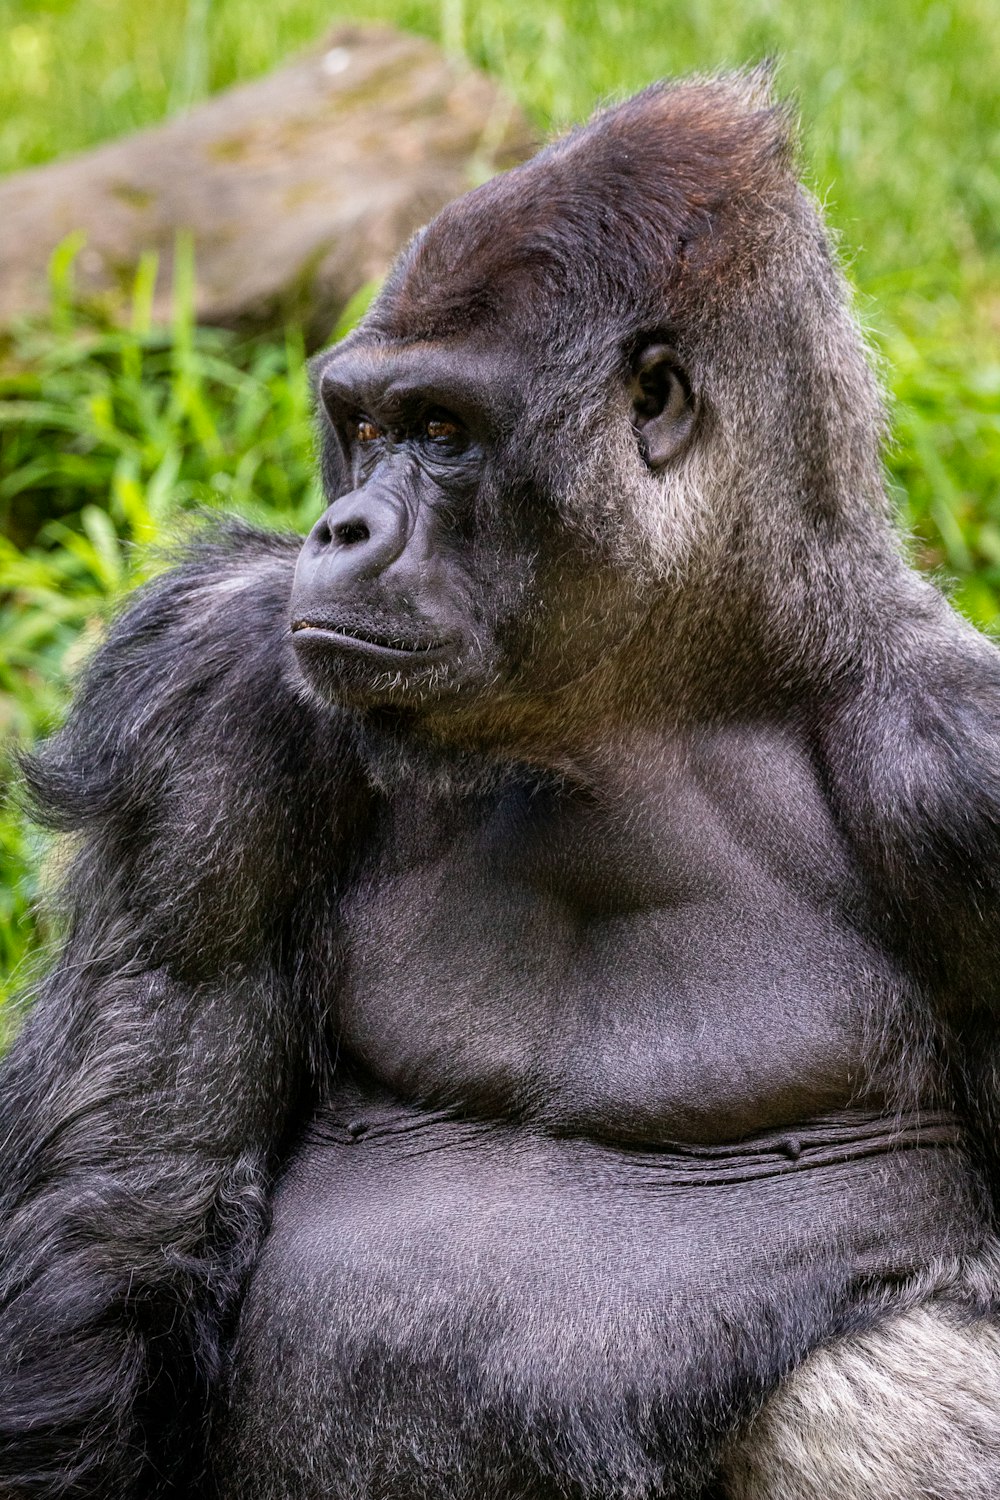 Schwarzer Gorilla liegt tagsüber auf grünem Gras